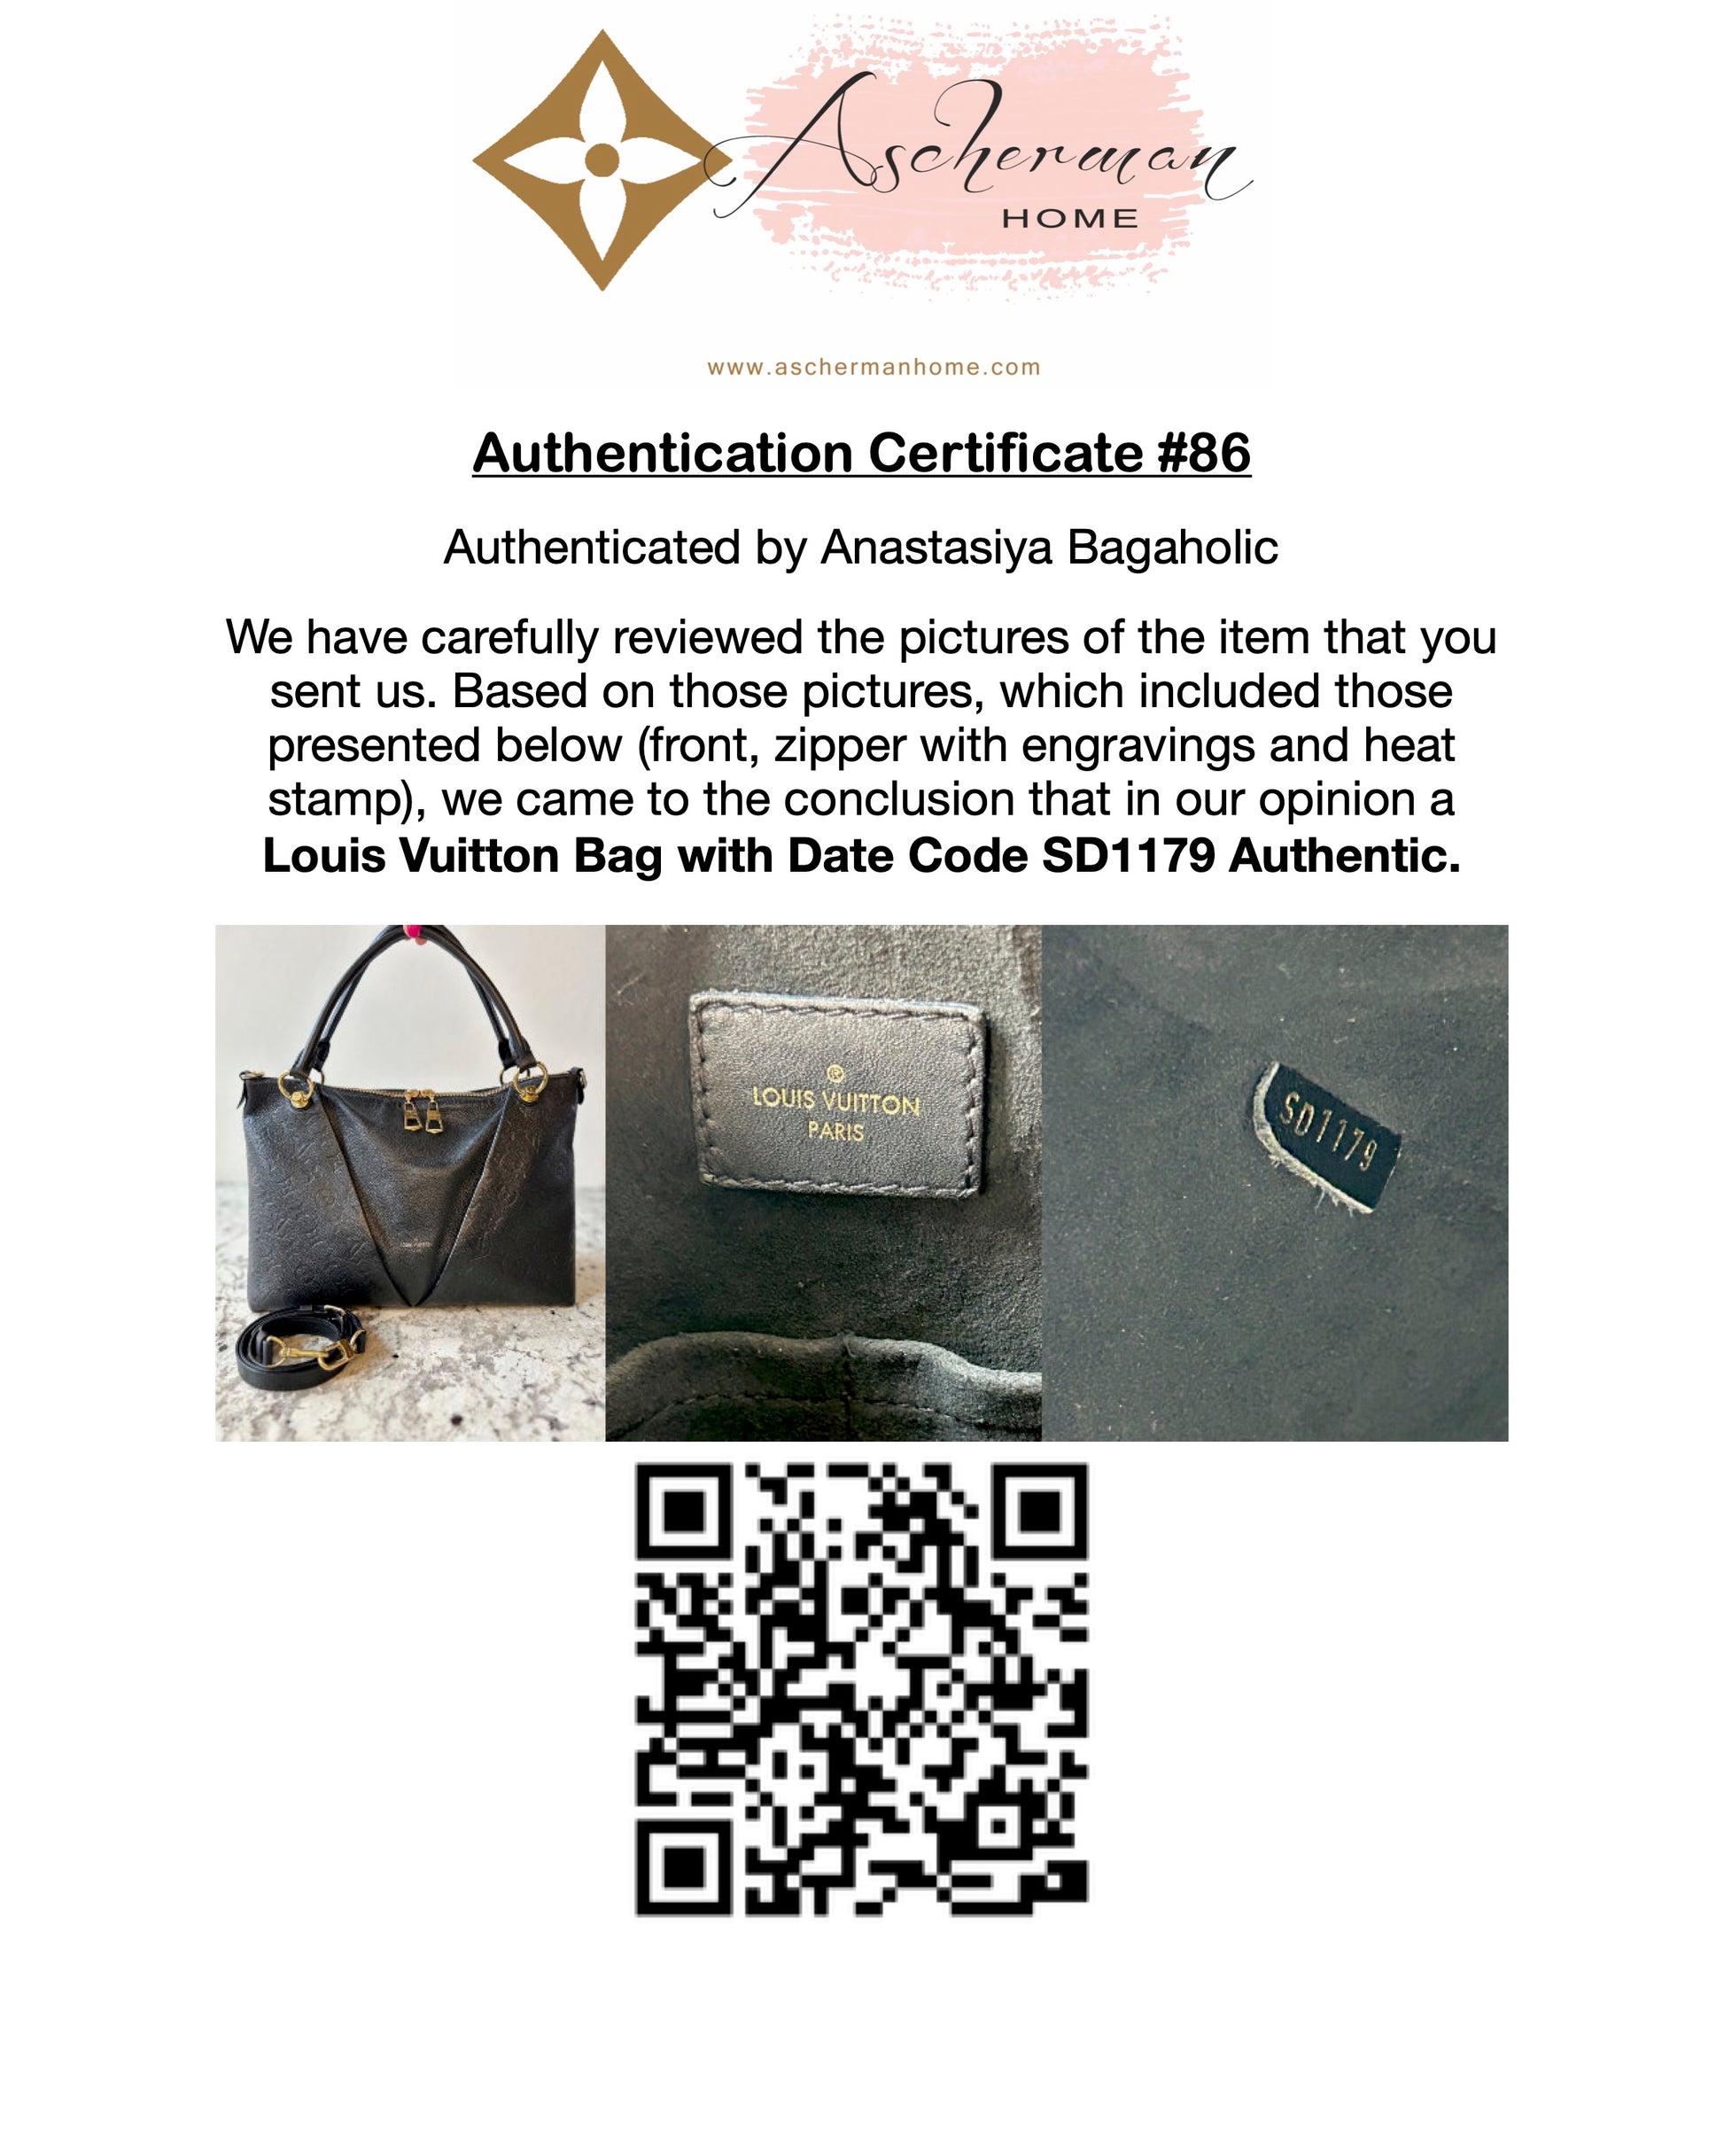 Louis Vuitton Authentication – Bagaholic